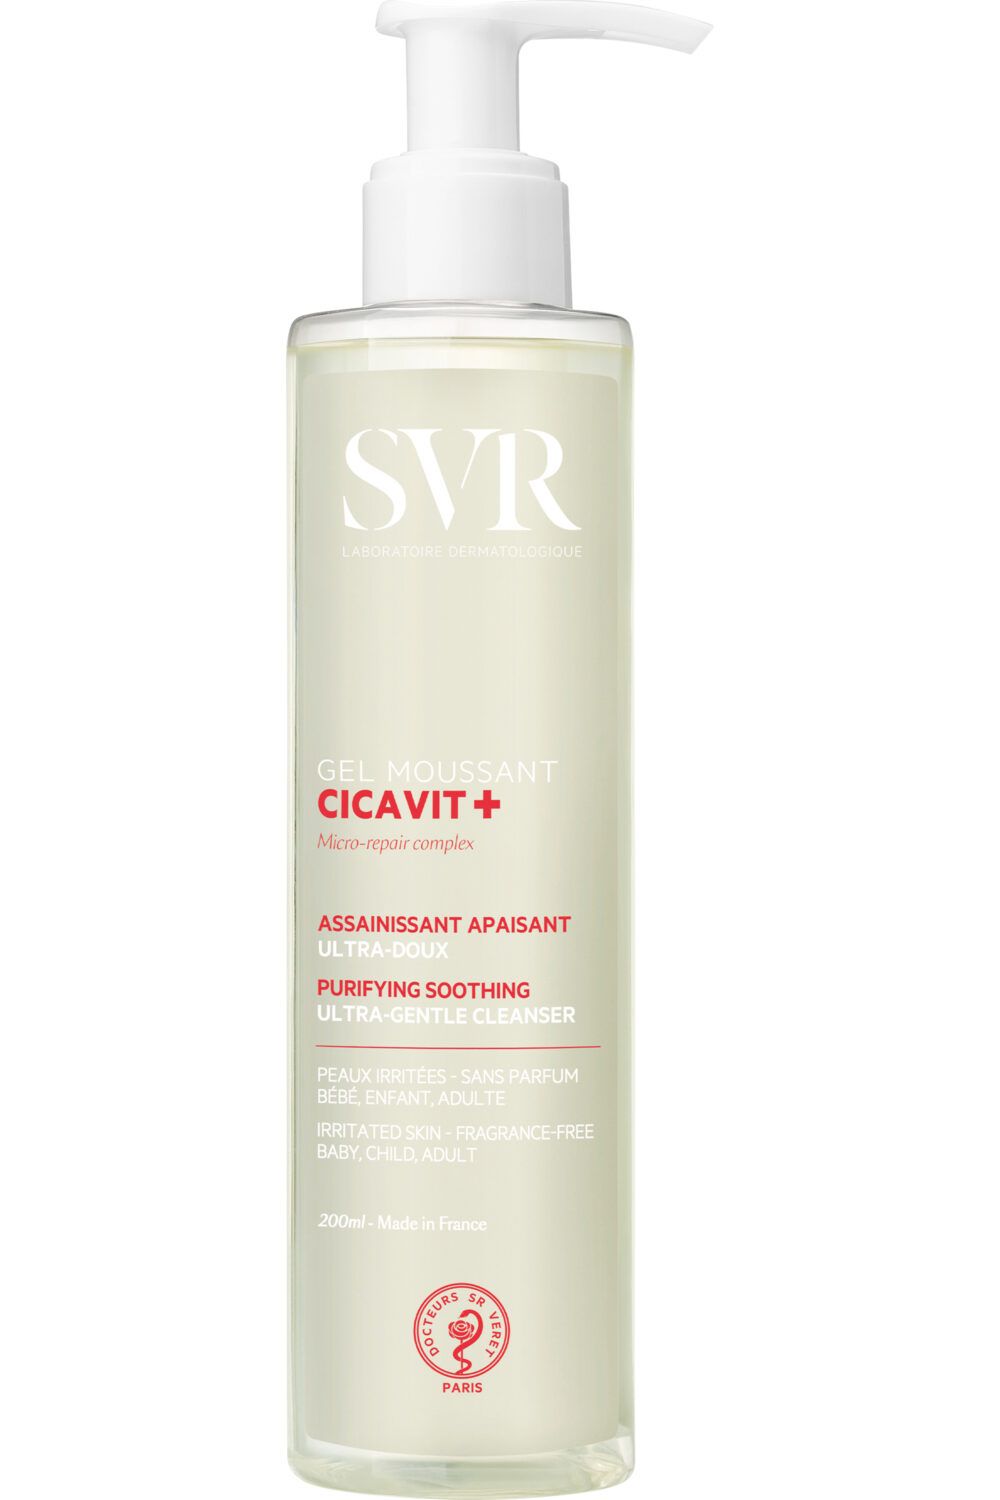 SVR - Gel nettoyant visage & corps apaisant ultra-doux peaux irritées Cicavit+